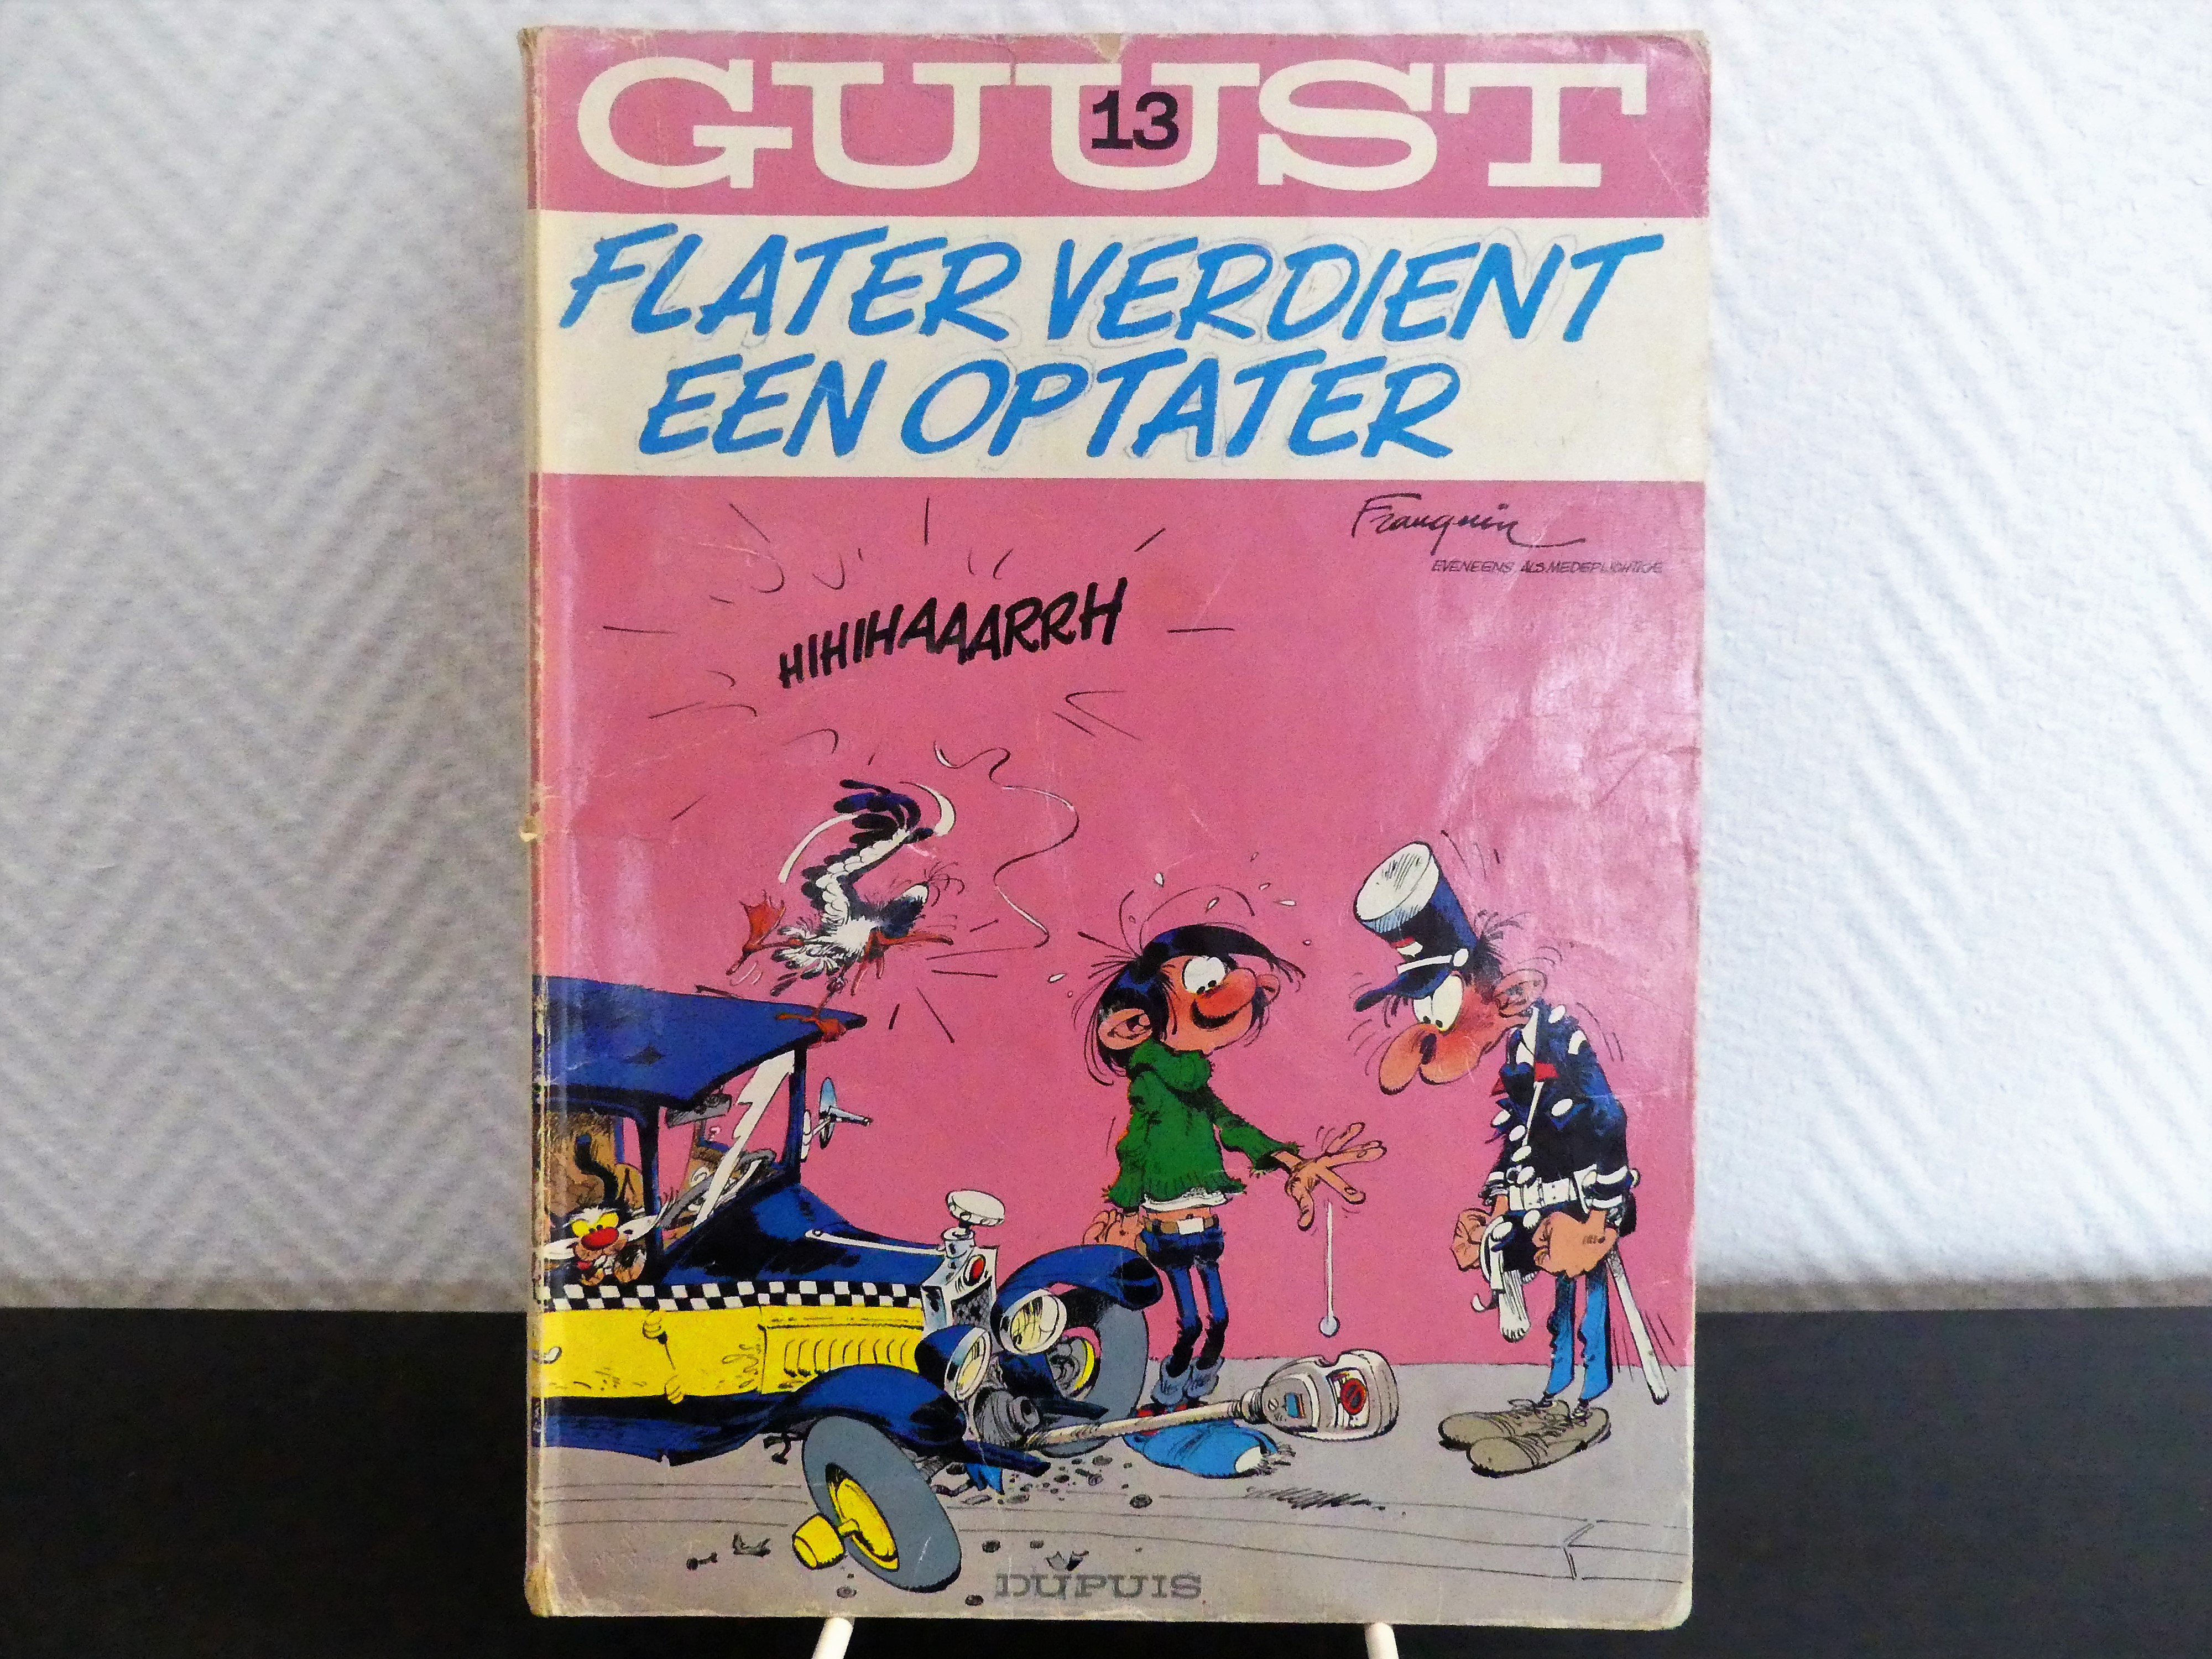 Stripalbum, Franquin 1979, nummer 13 "Flater verdient een optater"